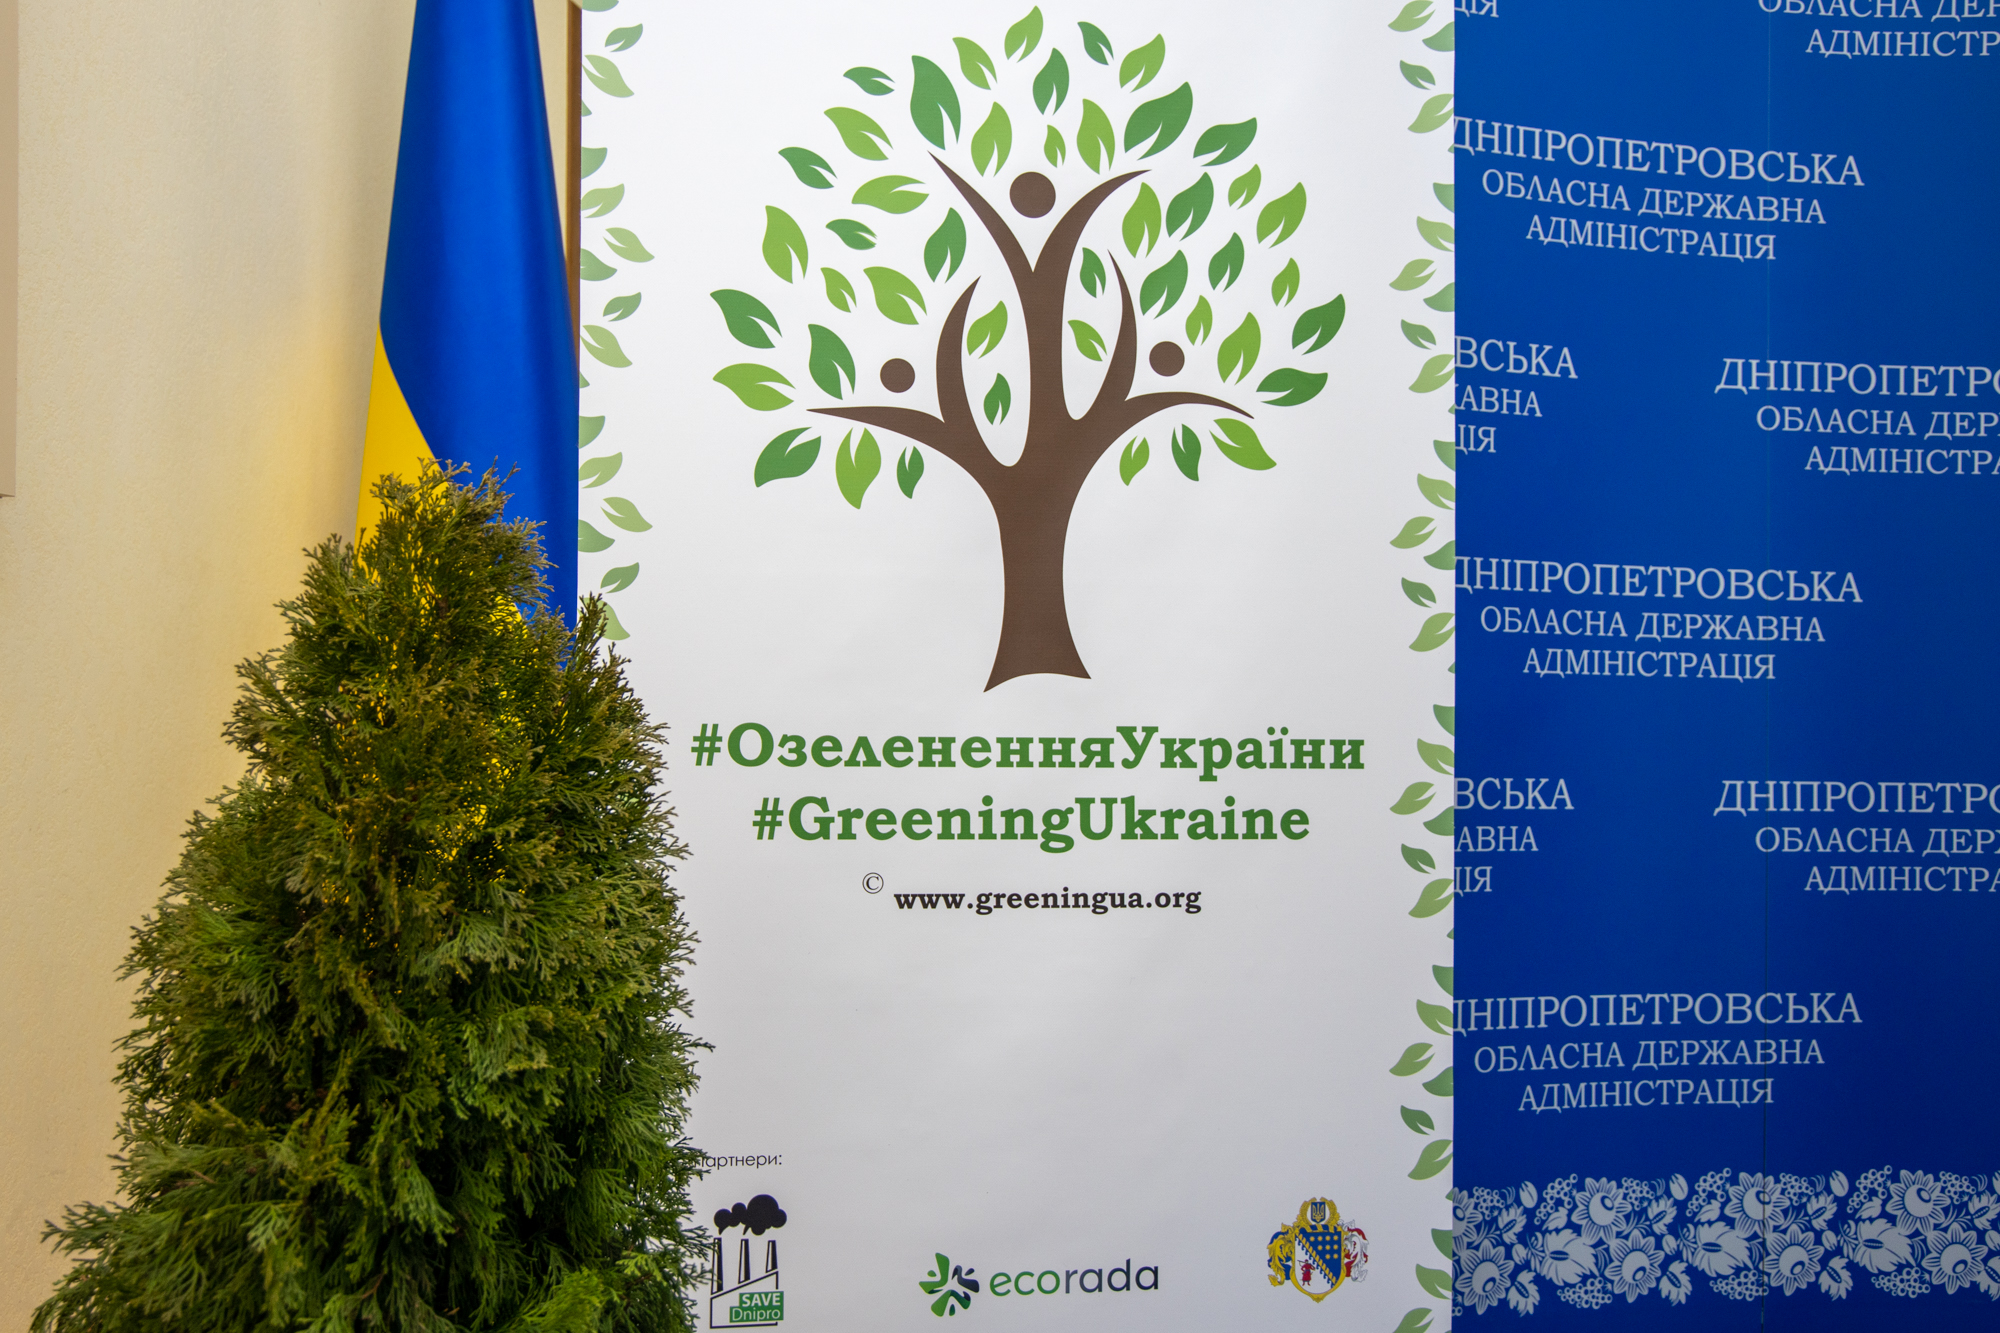 Дніпропетровщина долучилася до всеукраїнського проєкту з озеленення